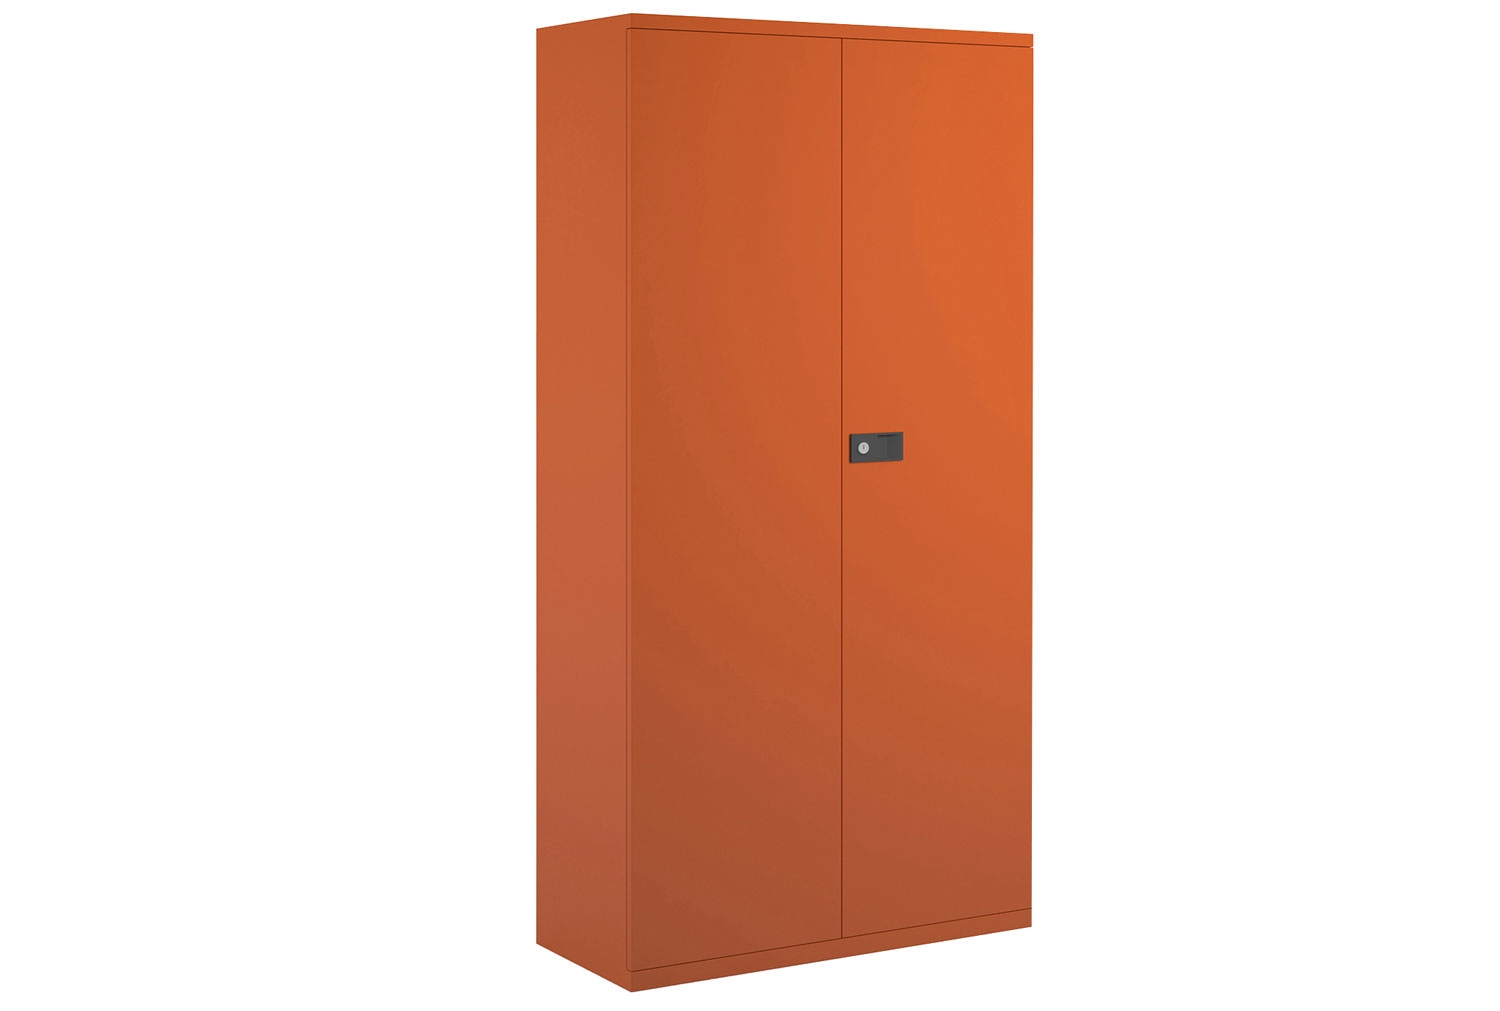 Bisley Economy Double Door Steel Office Cupboards, 4 Shelf - 91wx40dx197h (cm), Orange